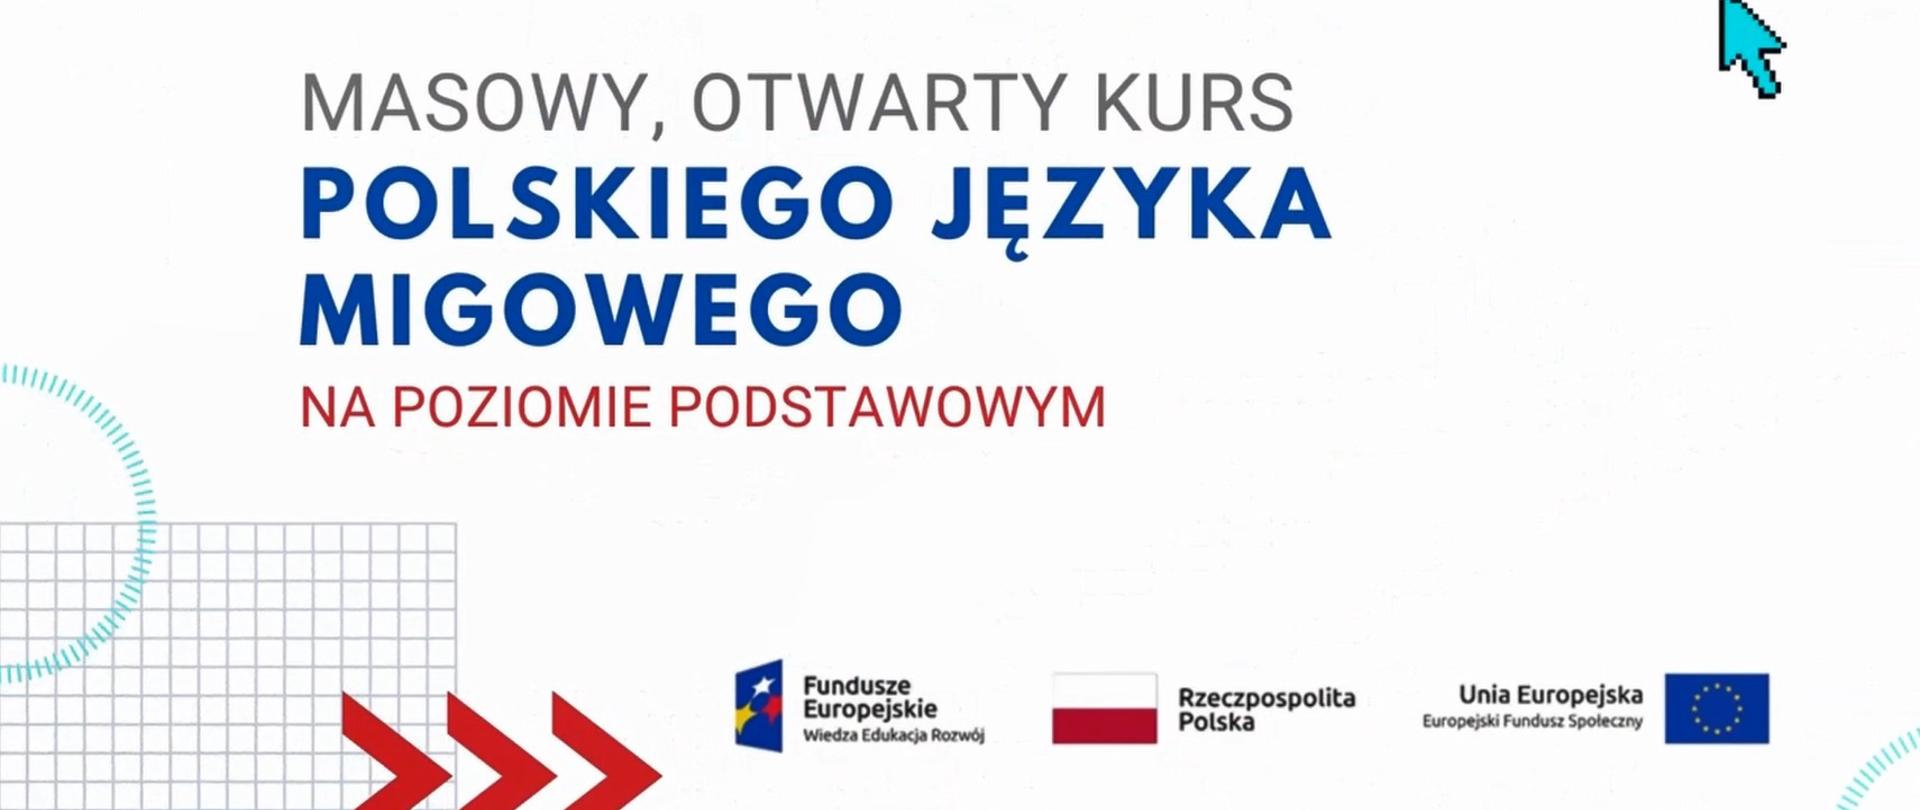 Kurs polskiego języka migowego zorganizowany przez Uniwersytet Humanistyczno-Przyrodniczy im. Jana Długosza w Częstochowie